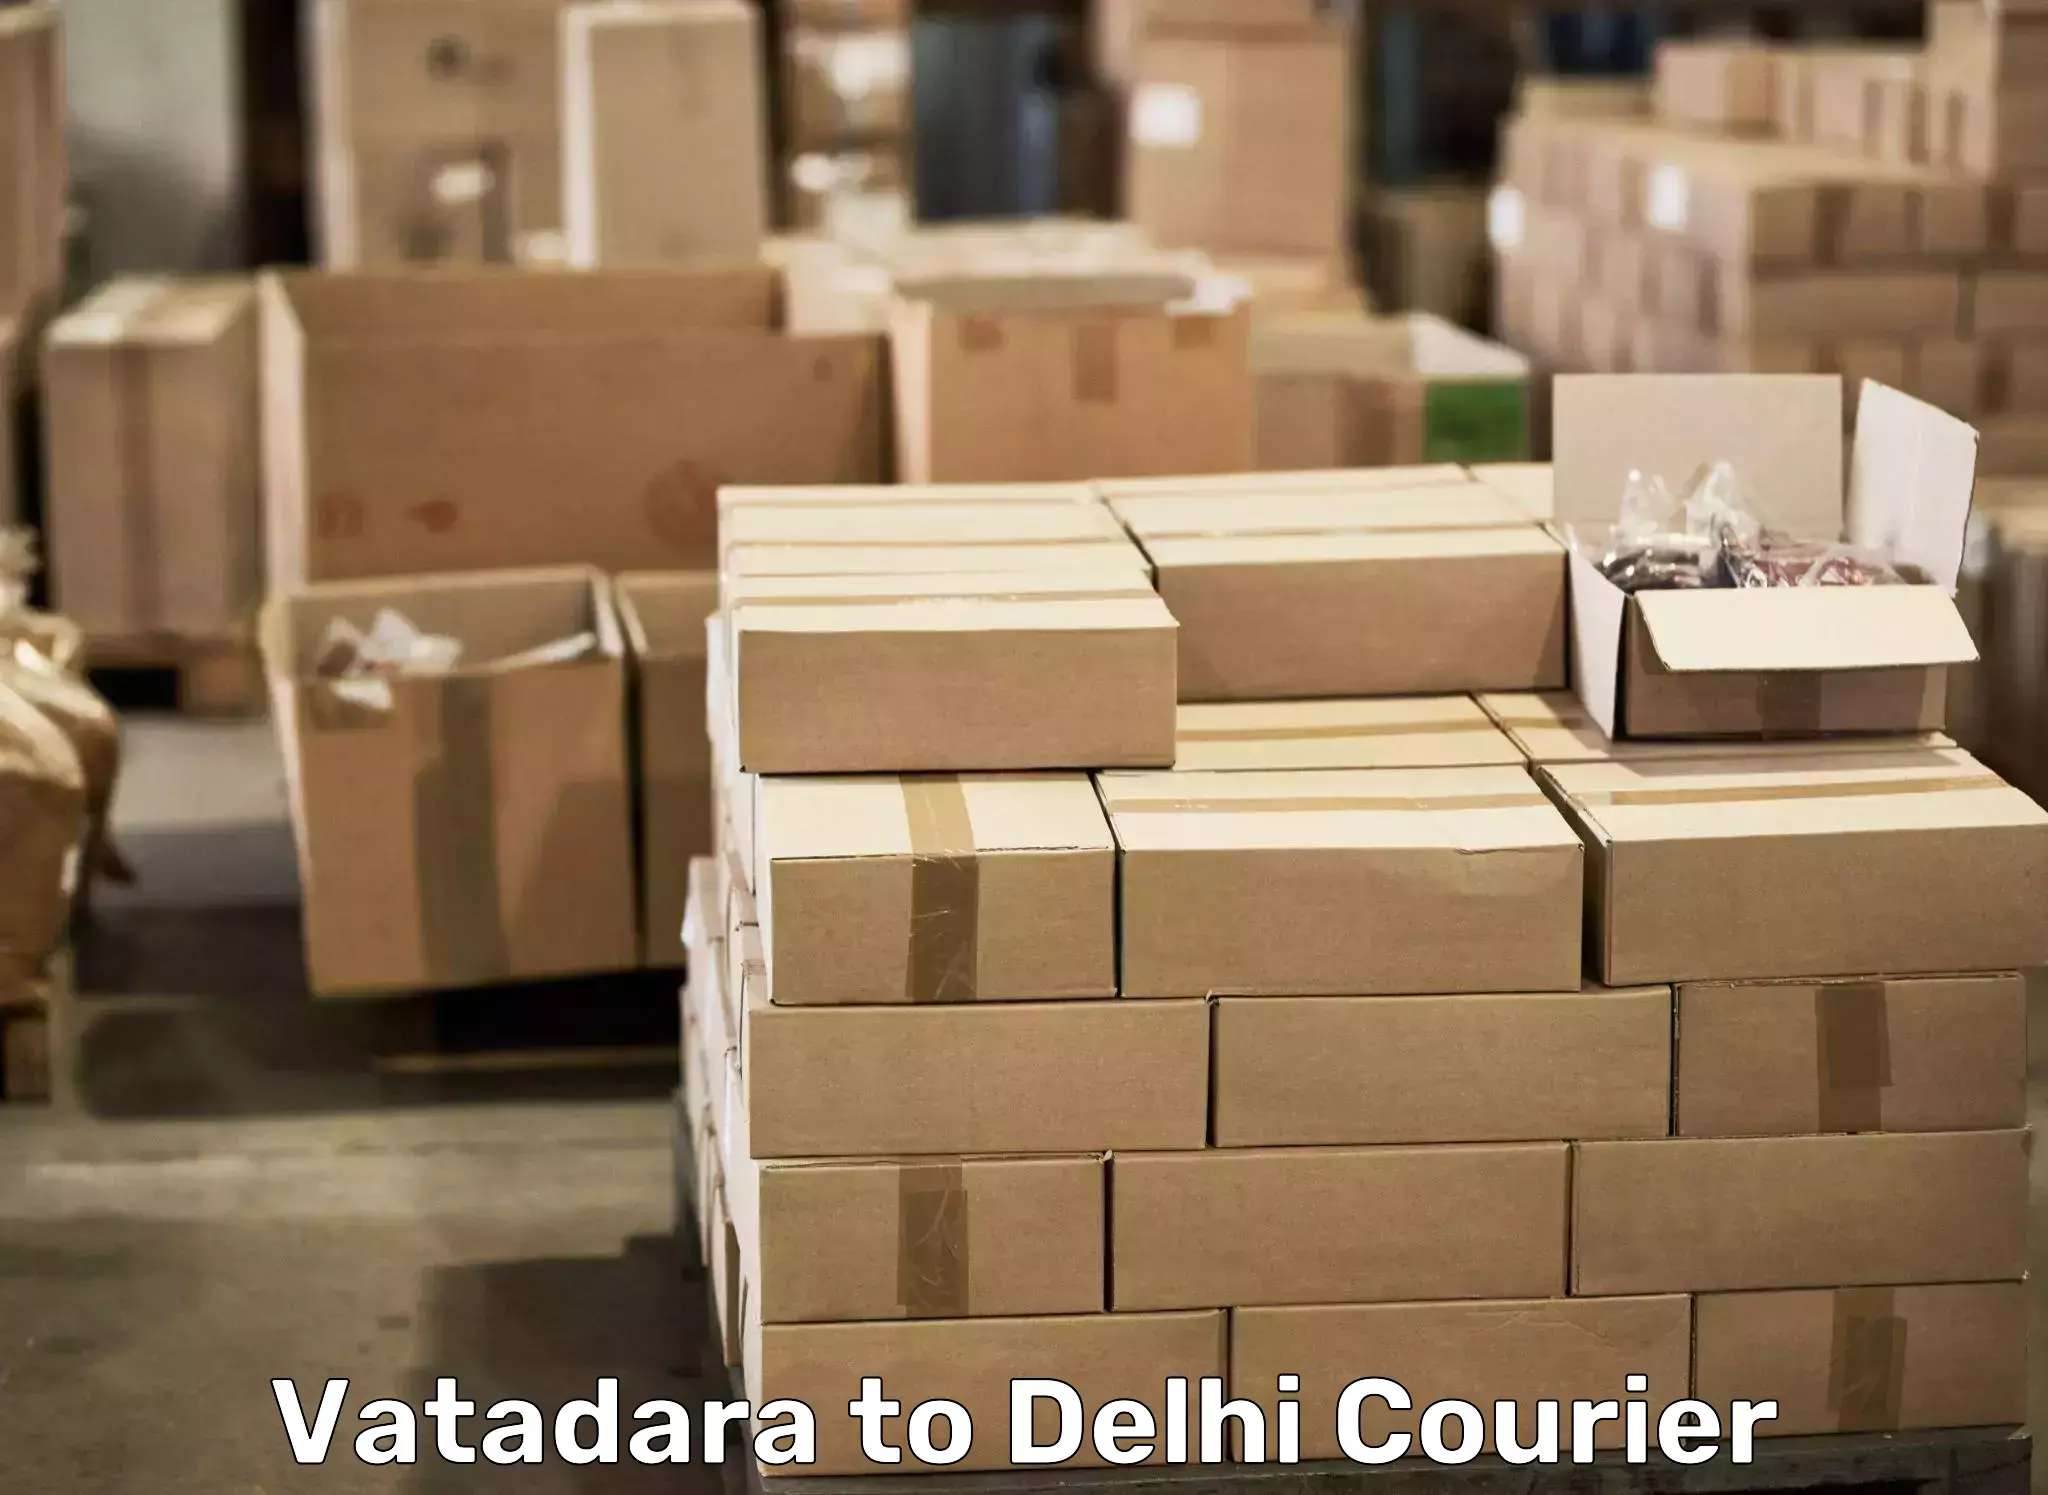 Trusted moving company Vatadara to University of Delhi